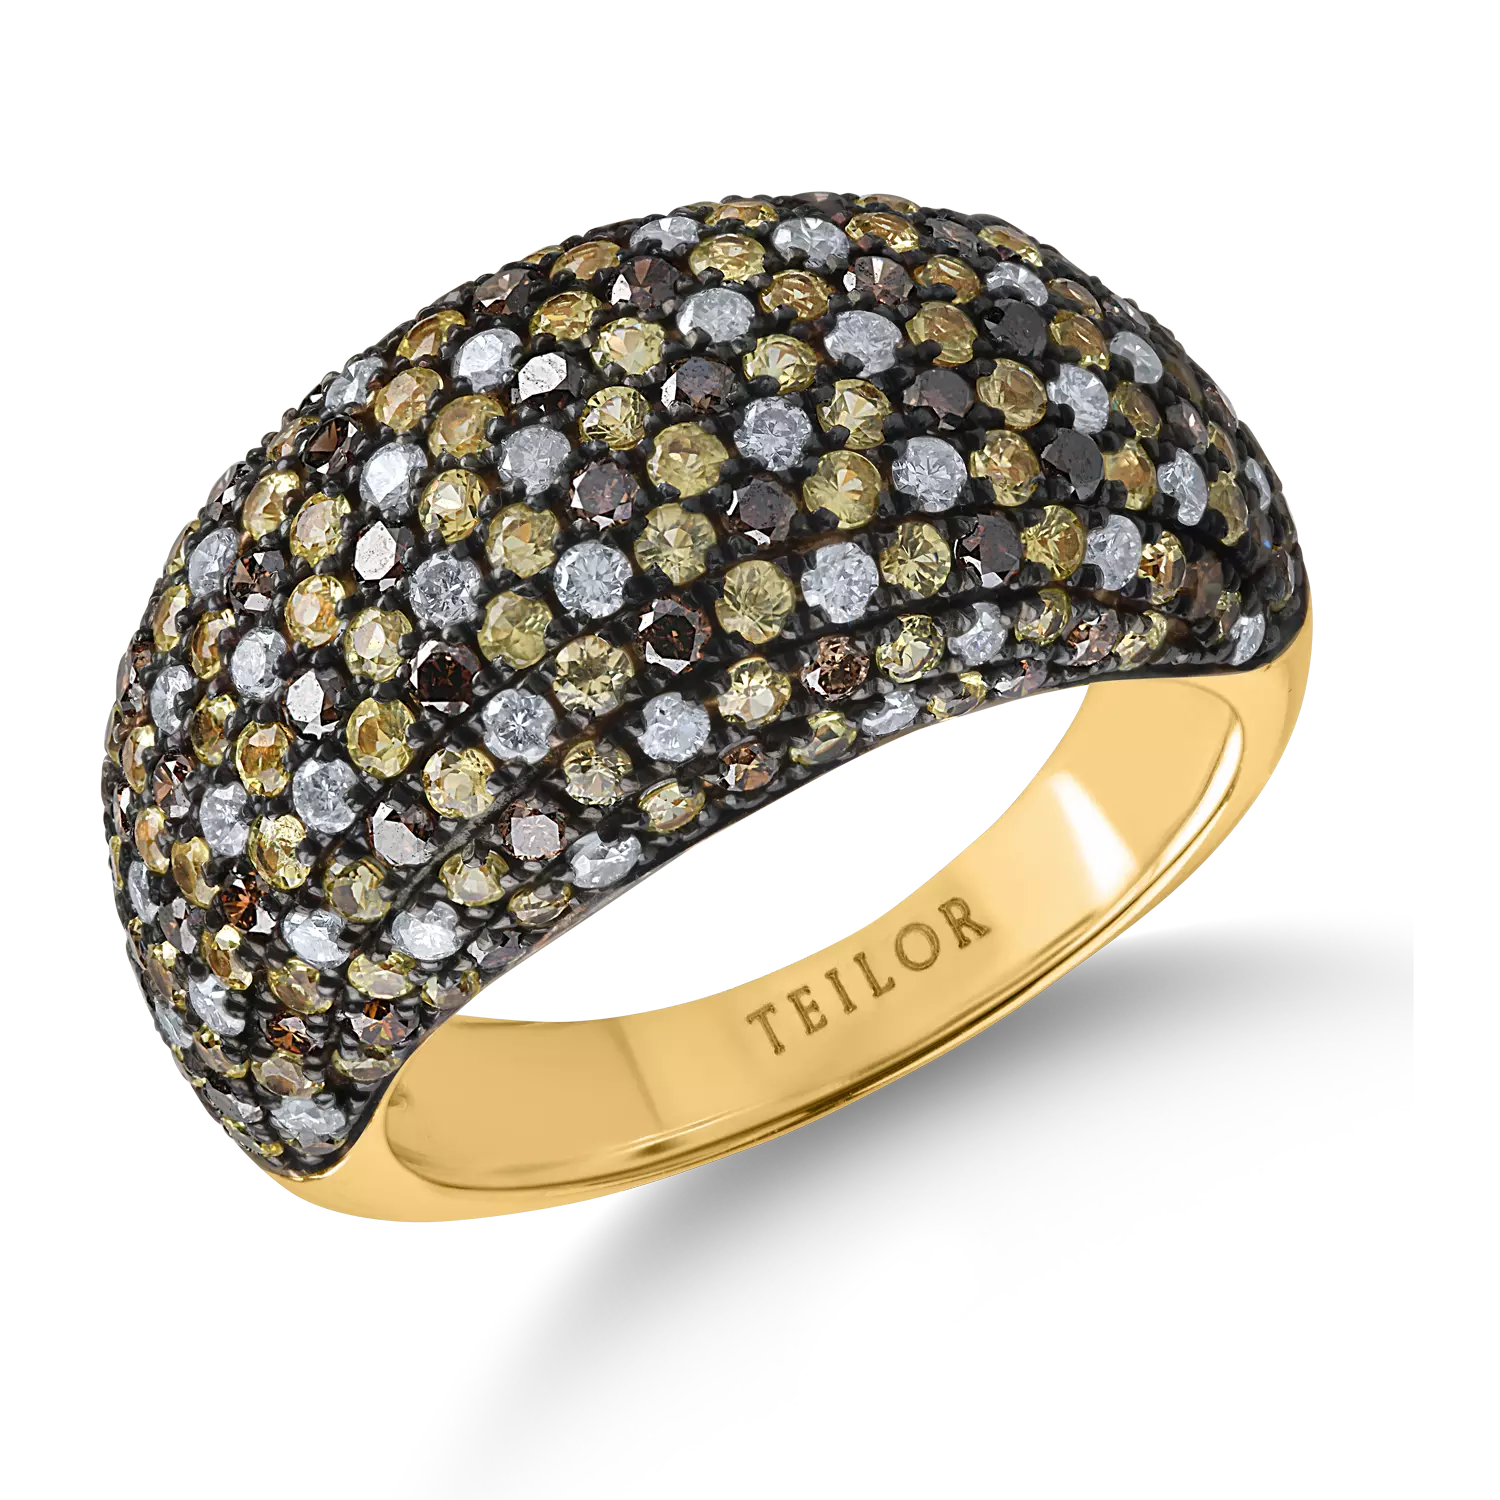 Sárga arany színű mikrobeágyazó gyűrű 1.7ct sárga zafírral és 1.3ct gyémánttal